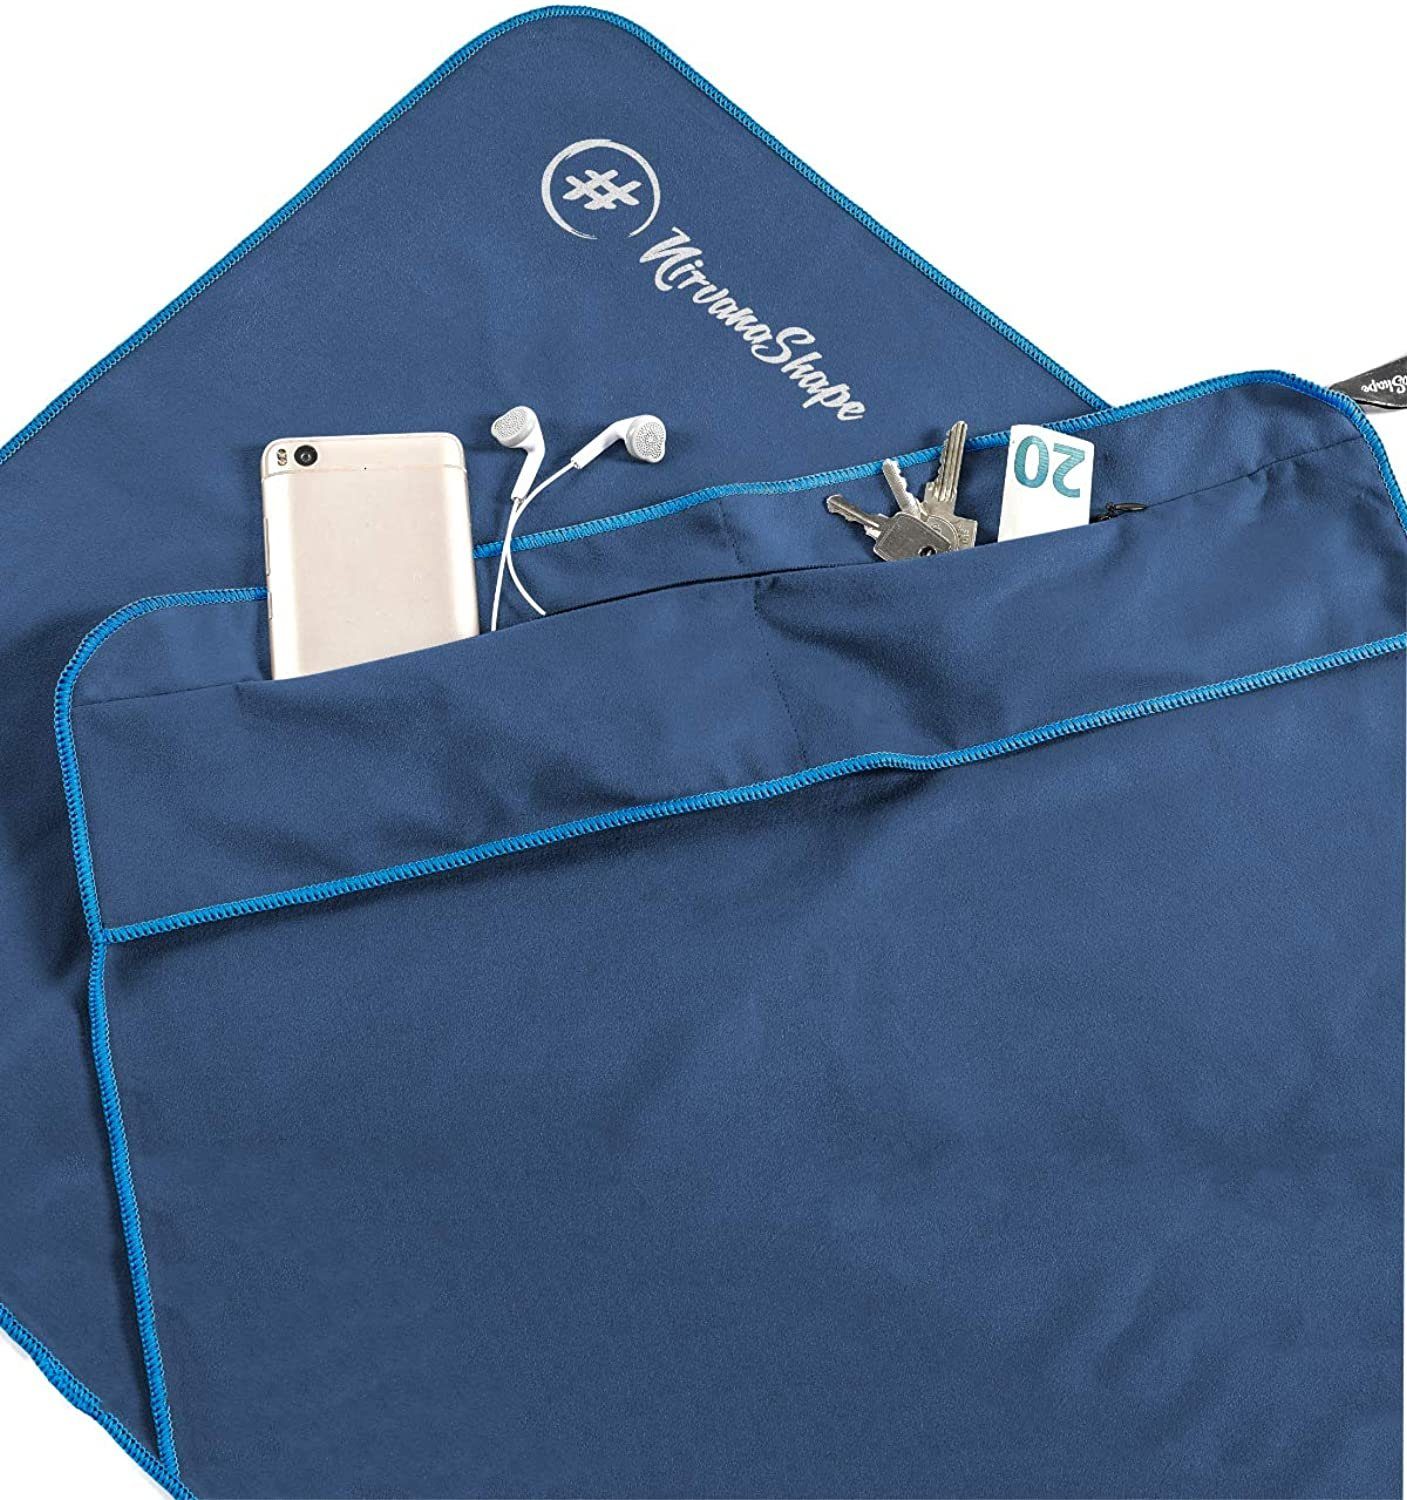 NirvanaShape Sporthandtuch Fitness-Handtuch mit Magnet-Clip, Mikrofaser Sporthandtuch, Microfaser, 2x Reißverschlusstaschen & Funktionaler Geräteüberzug, Ultra-Saugfähig Blau / Blauer Rand